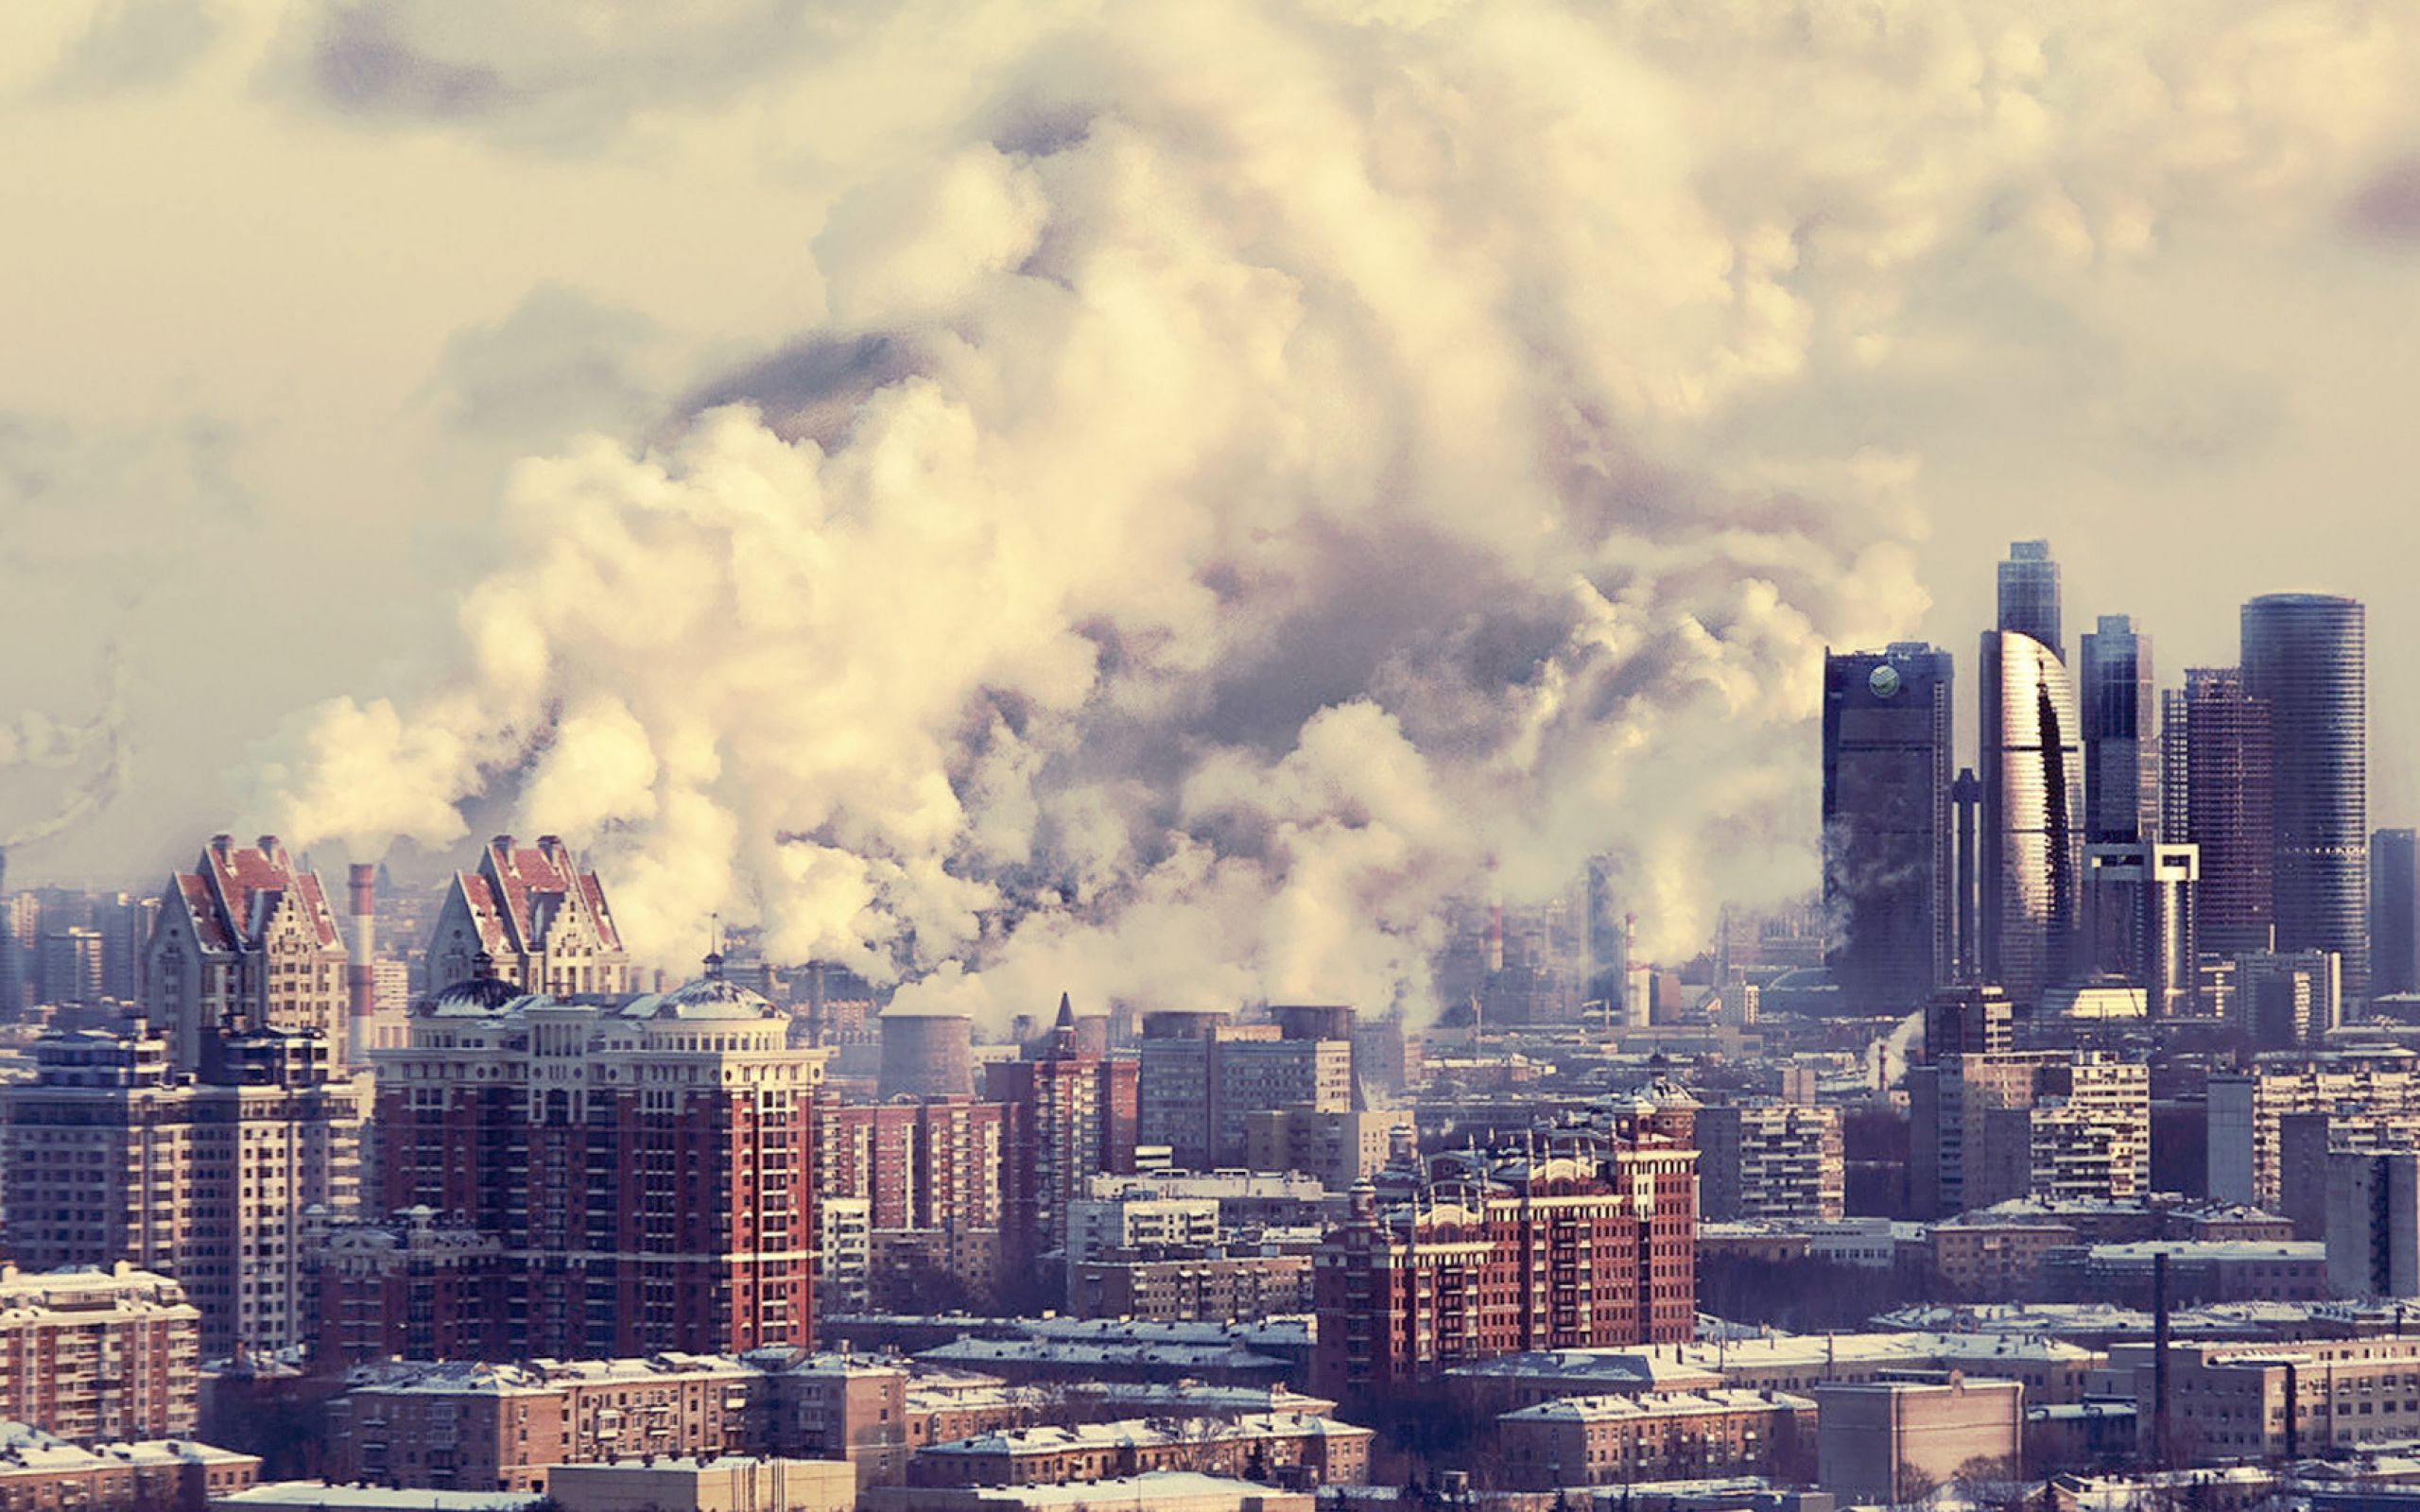 Окружающая среда крупных городов. Москва Сити смог. Загрязнение воздуха в городе. Город в дыму. Загрязнение атмосферы в городах.